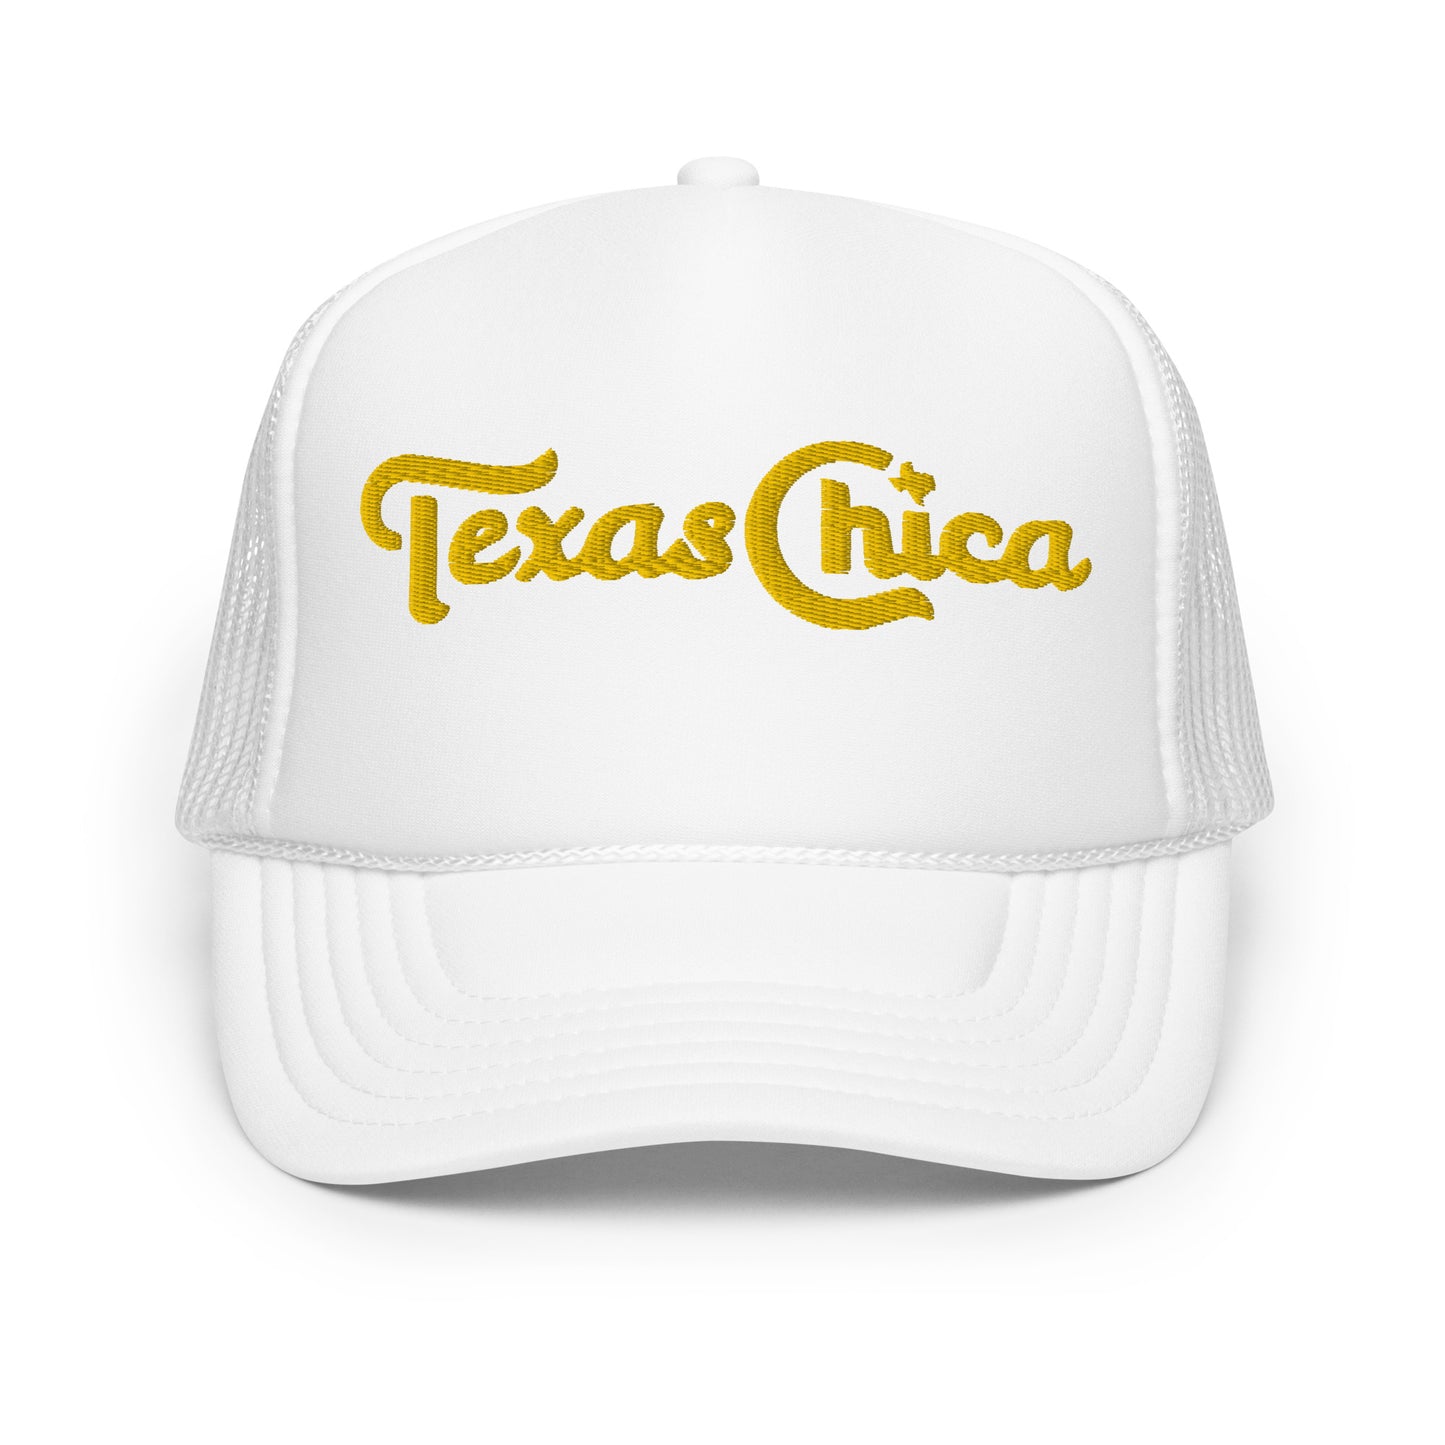 Sombrero camionero de espuma bordado Texas Chica